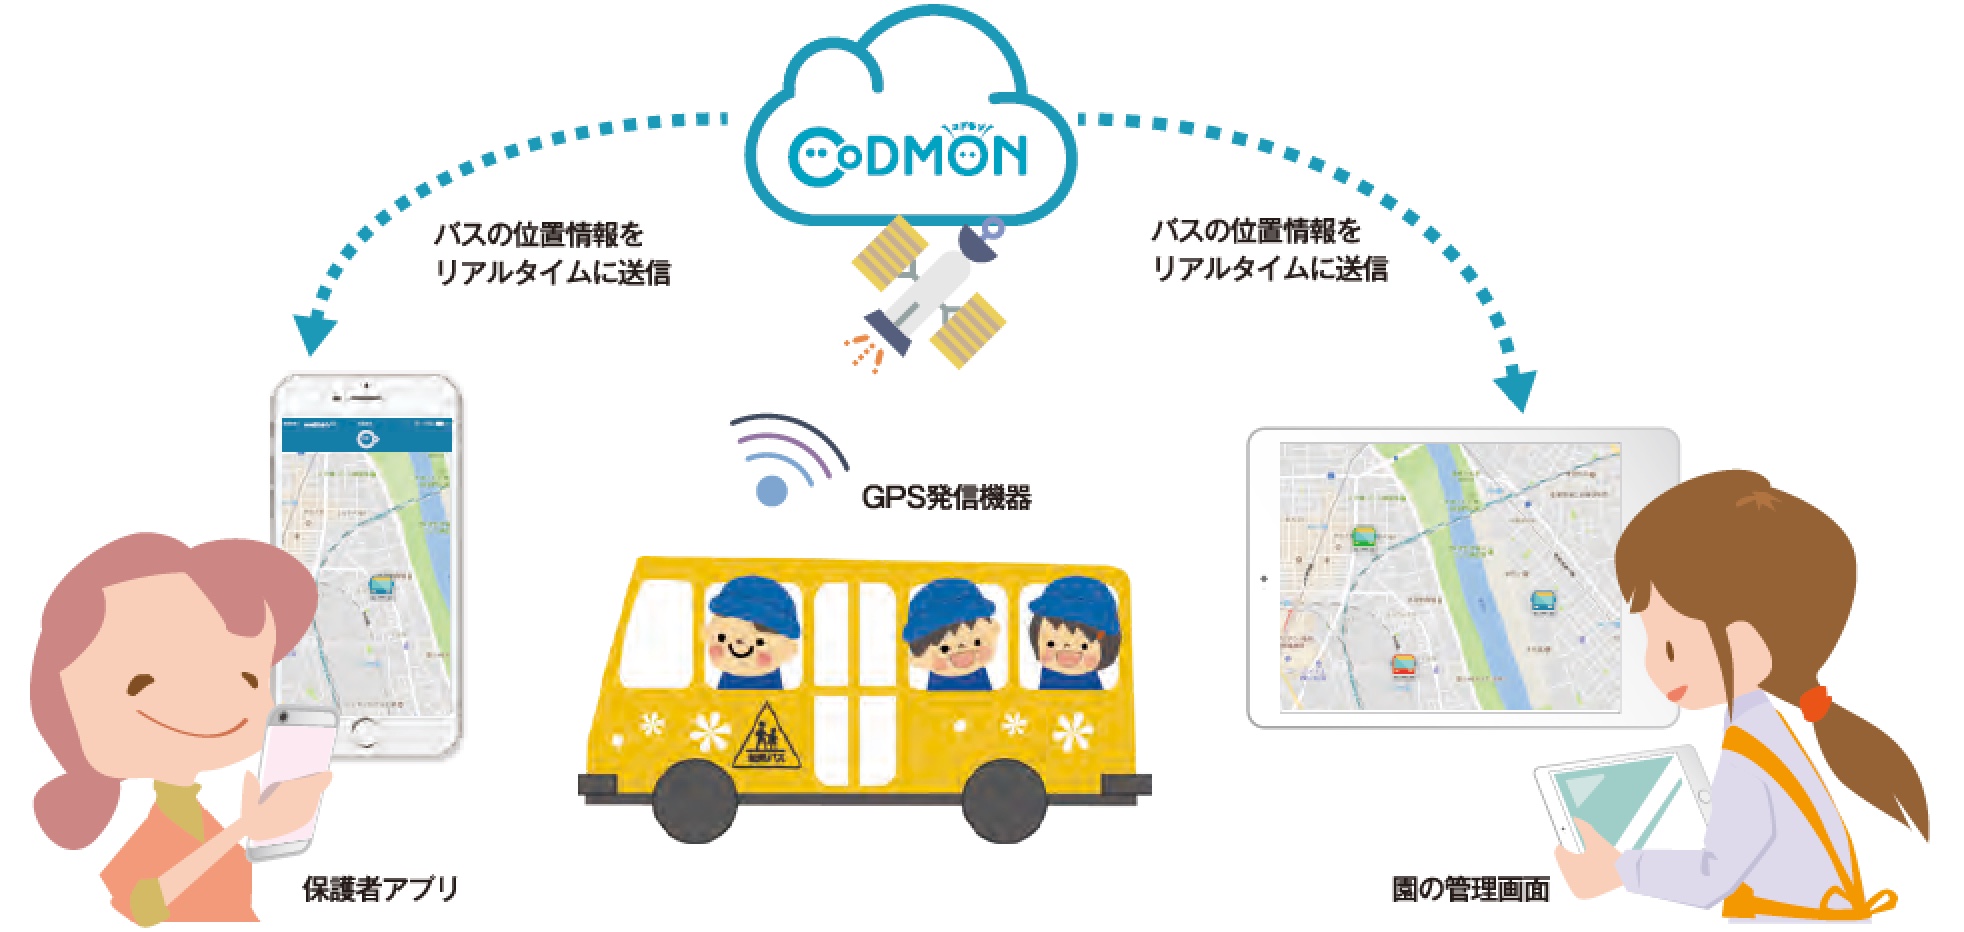 コドモンの送迎バス位置情報サービスは、保護者アプリ・園の管理画面にバスの位置情報をリアルタイムに送信